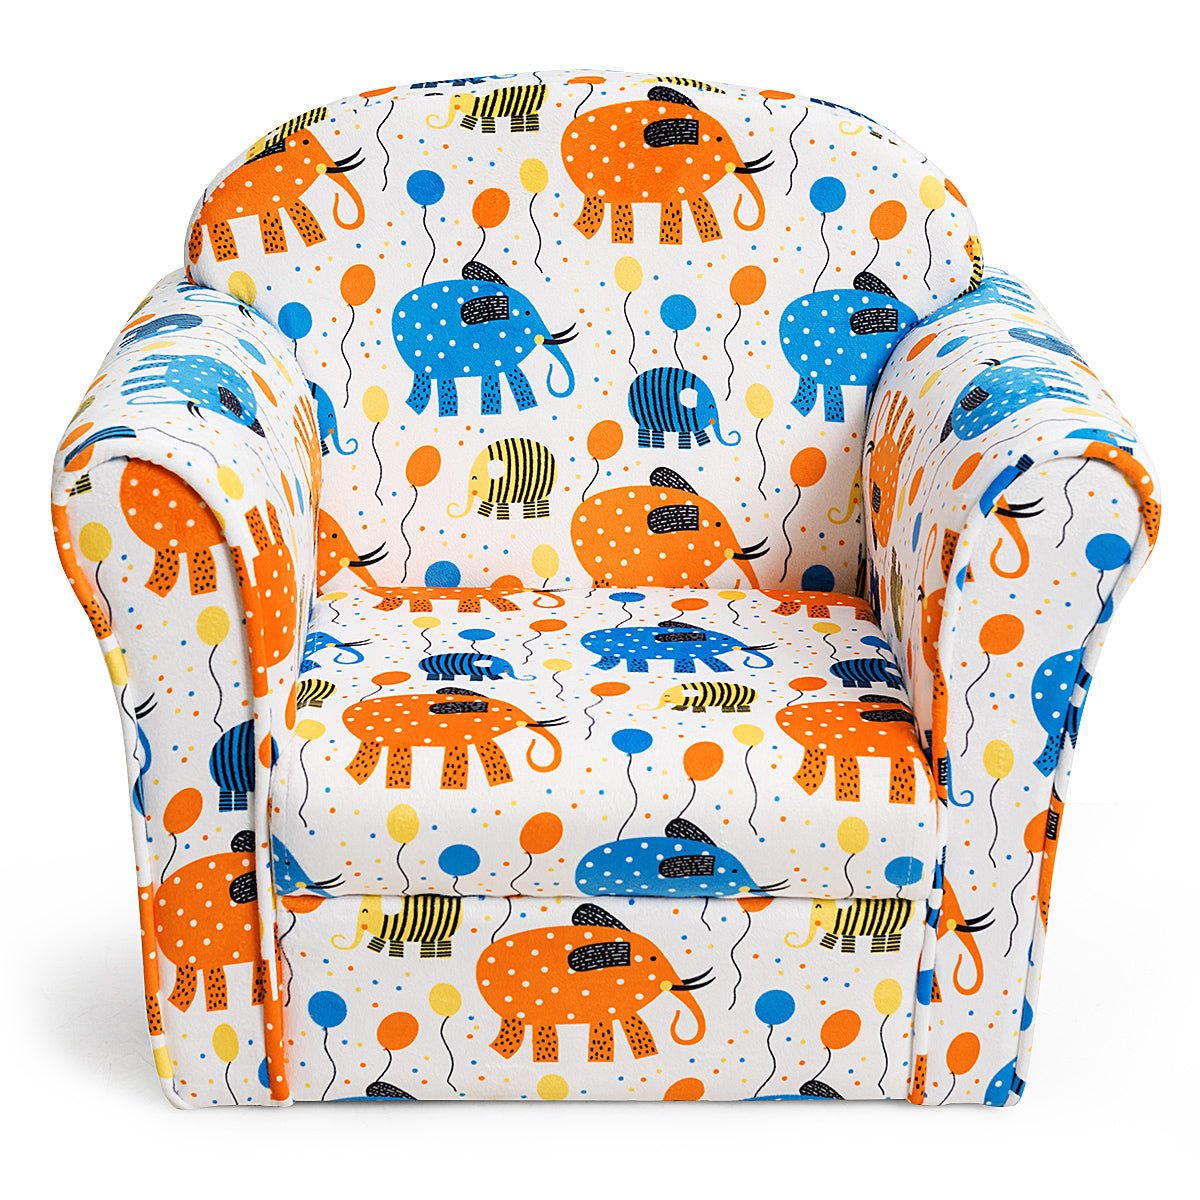 Velvet Kids Sofa in Lovely Design: Irresistible Comfort for Baby Room